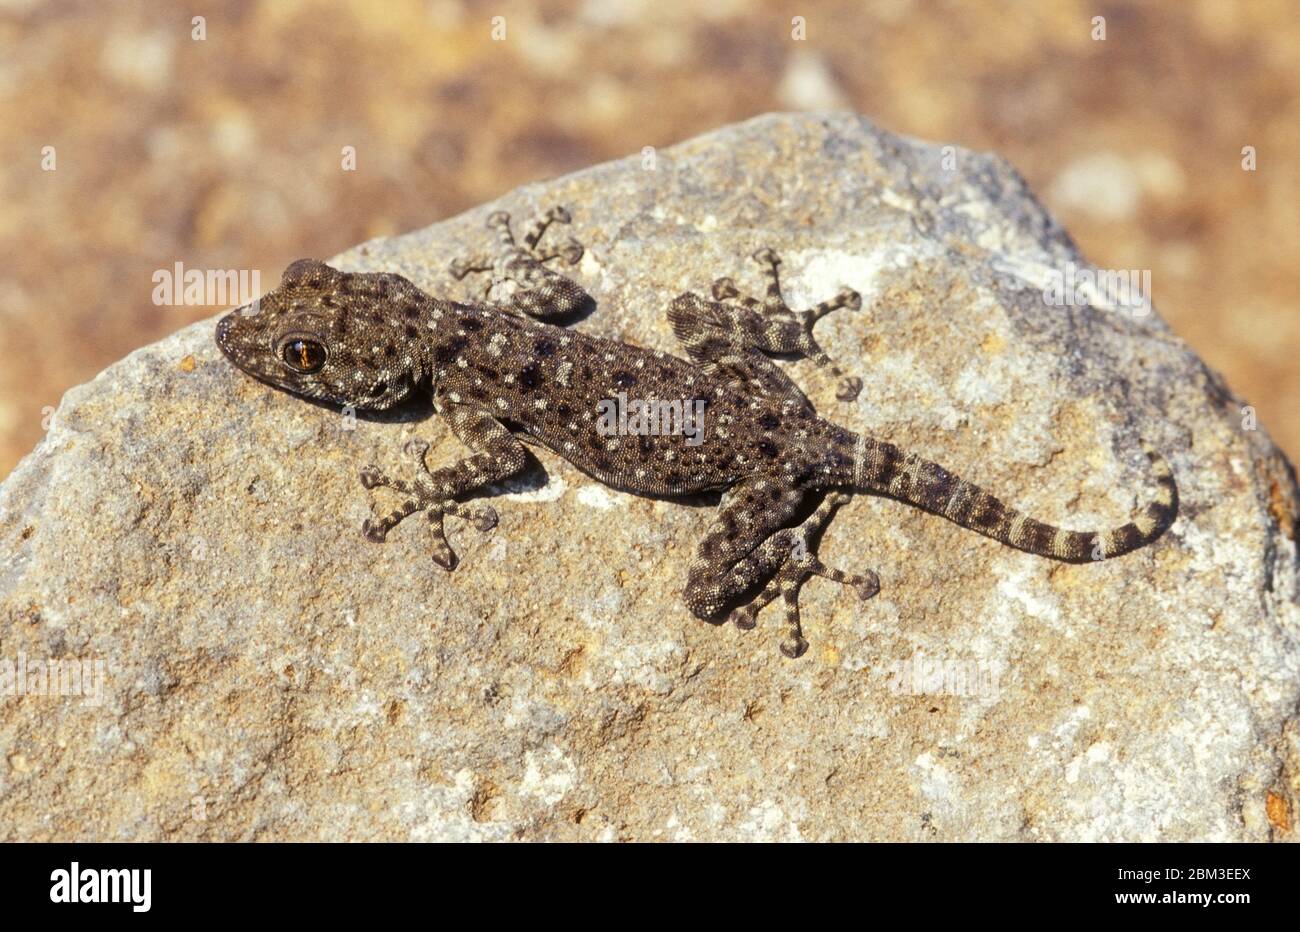 Fan-fingered gecko basking on a rock Stock Photo